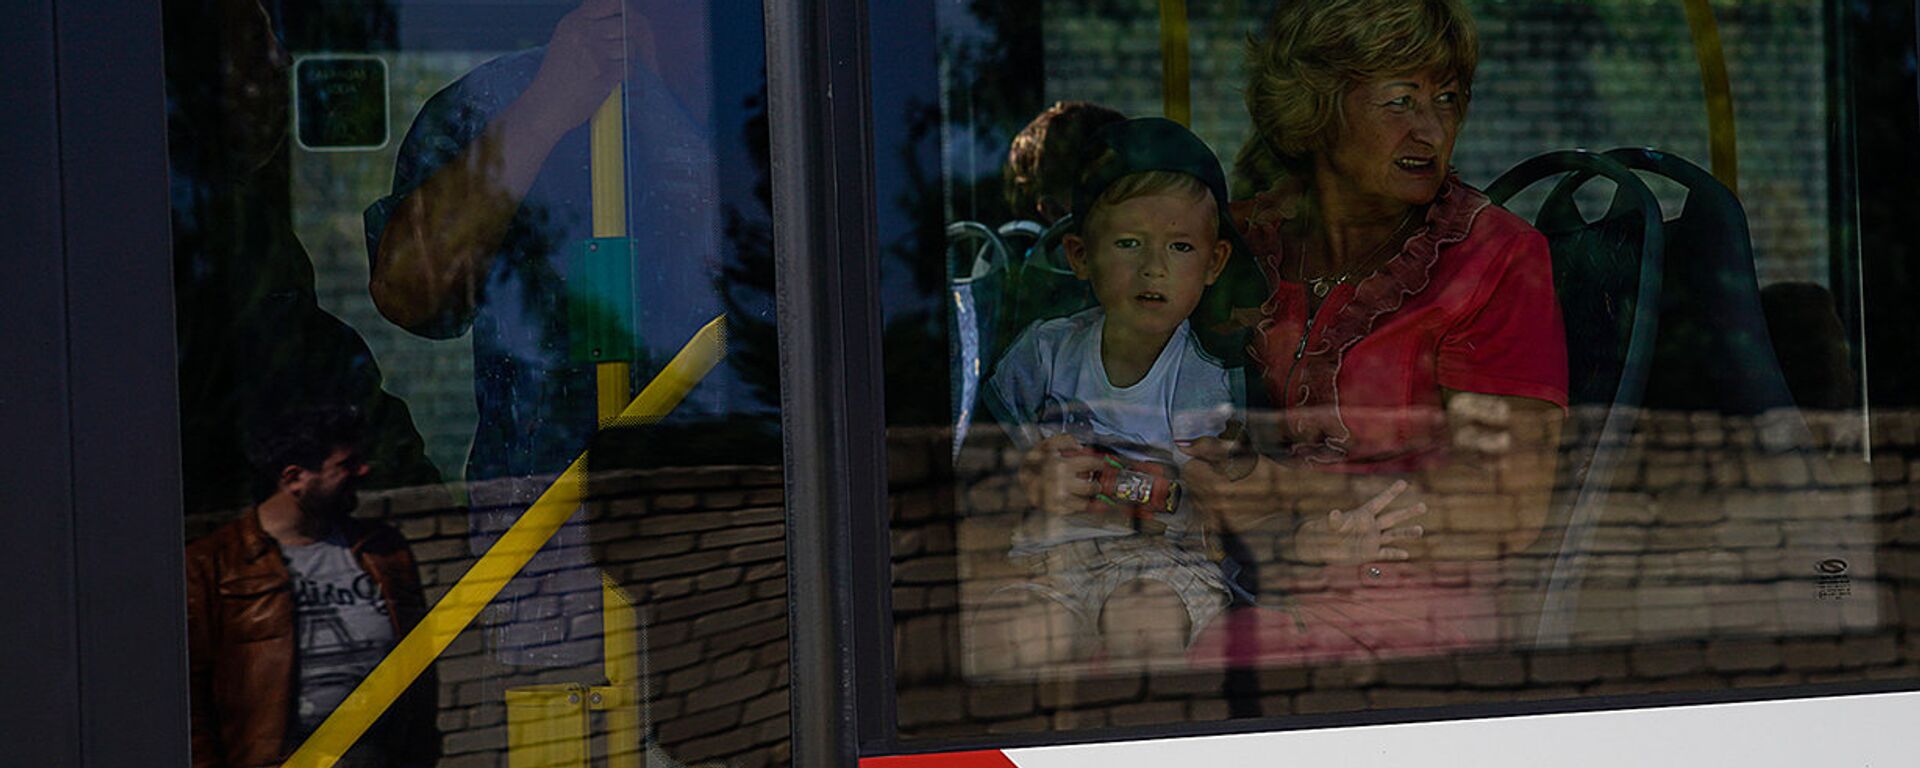 Мальчик с женщиной в автобусе - Sputnik Латвия, 1920, 11.09.2019